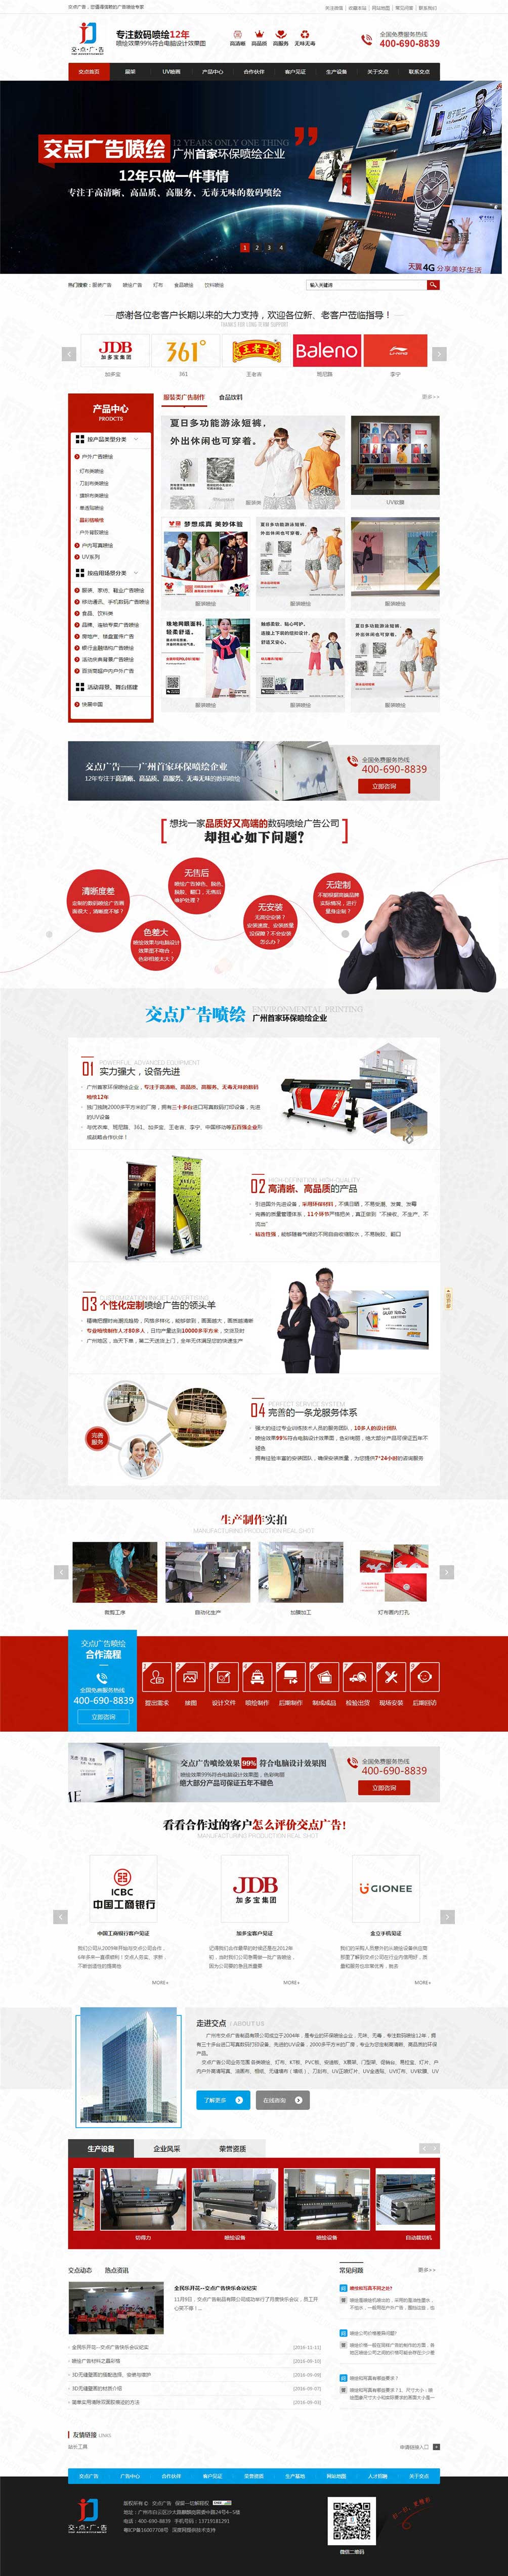 广州市交点广告制品营销型网站建设案例